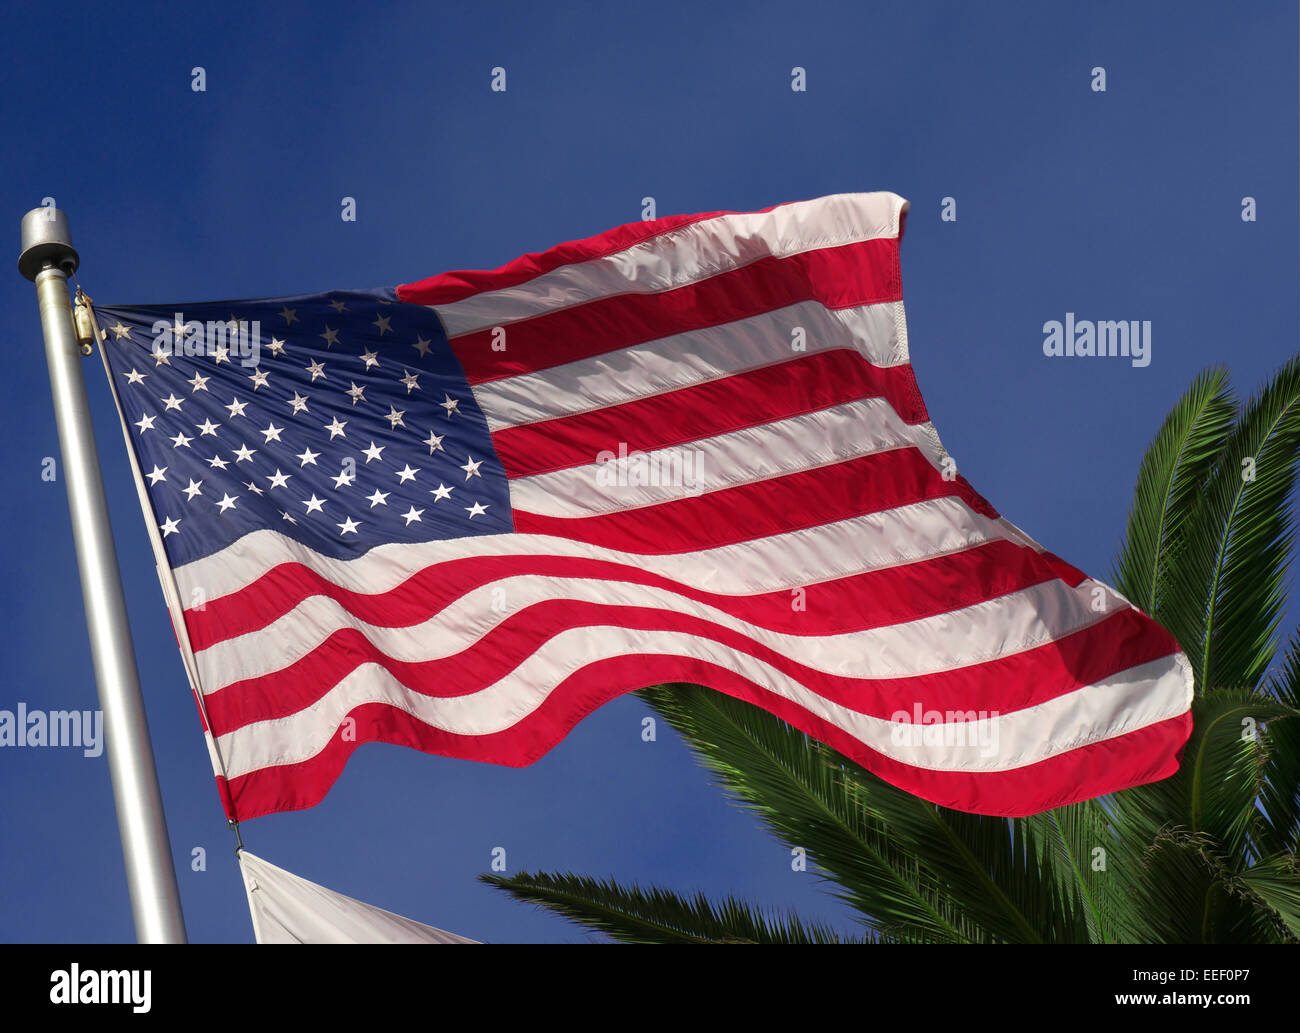 Stati Uniti a stelle e strisce battenti bandiera nella brezza con fronde di palme dietro Foto Stock